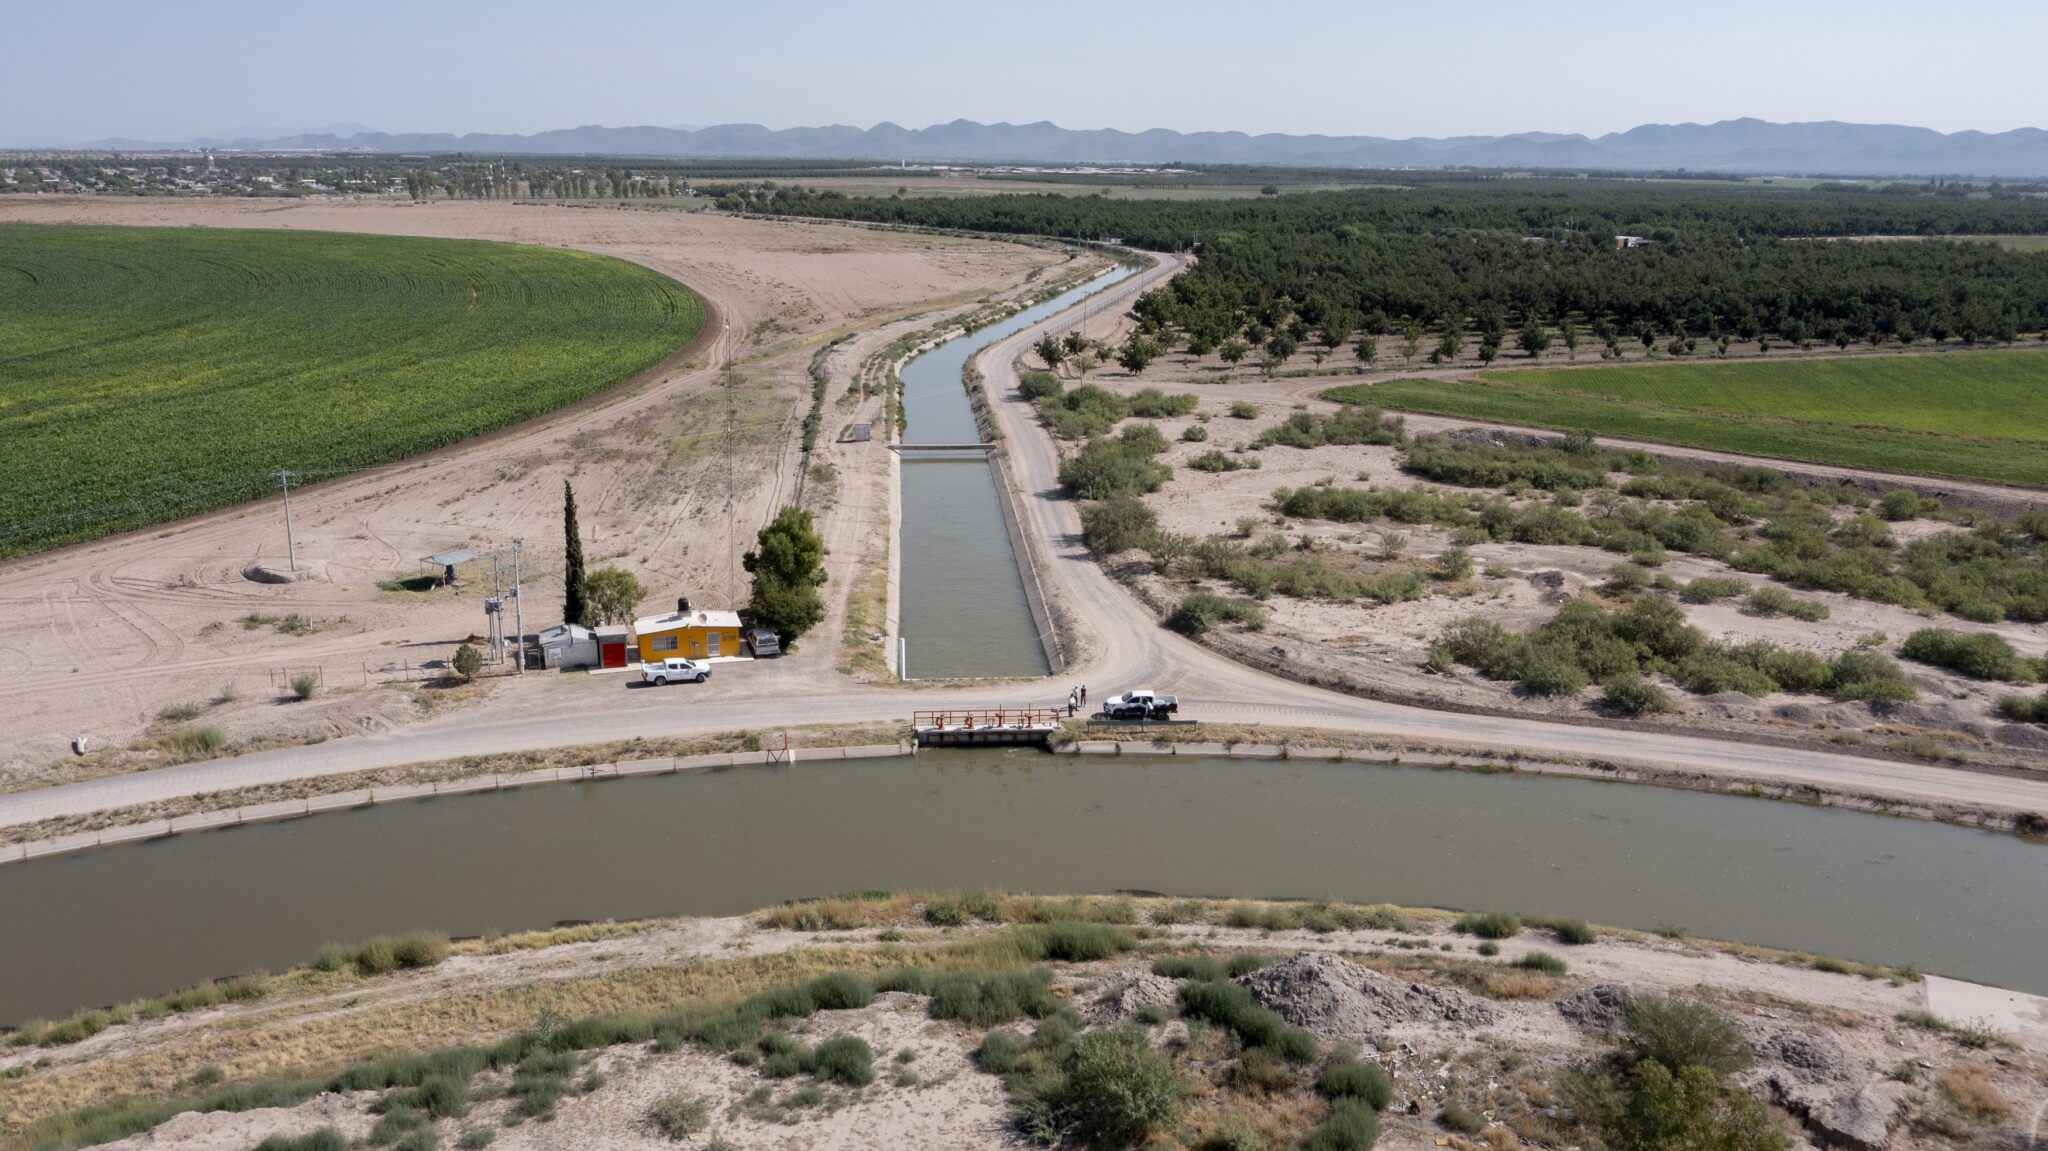 An irrigation canal winds its way through a desert landscape.